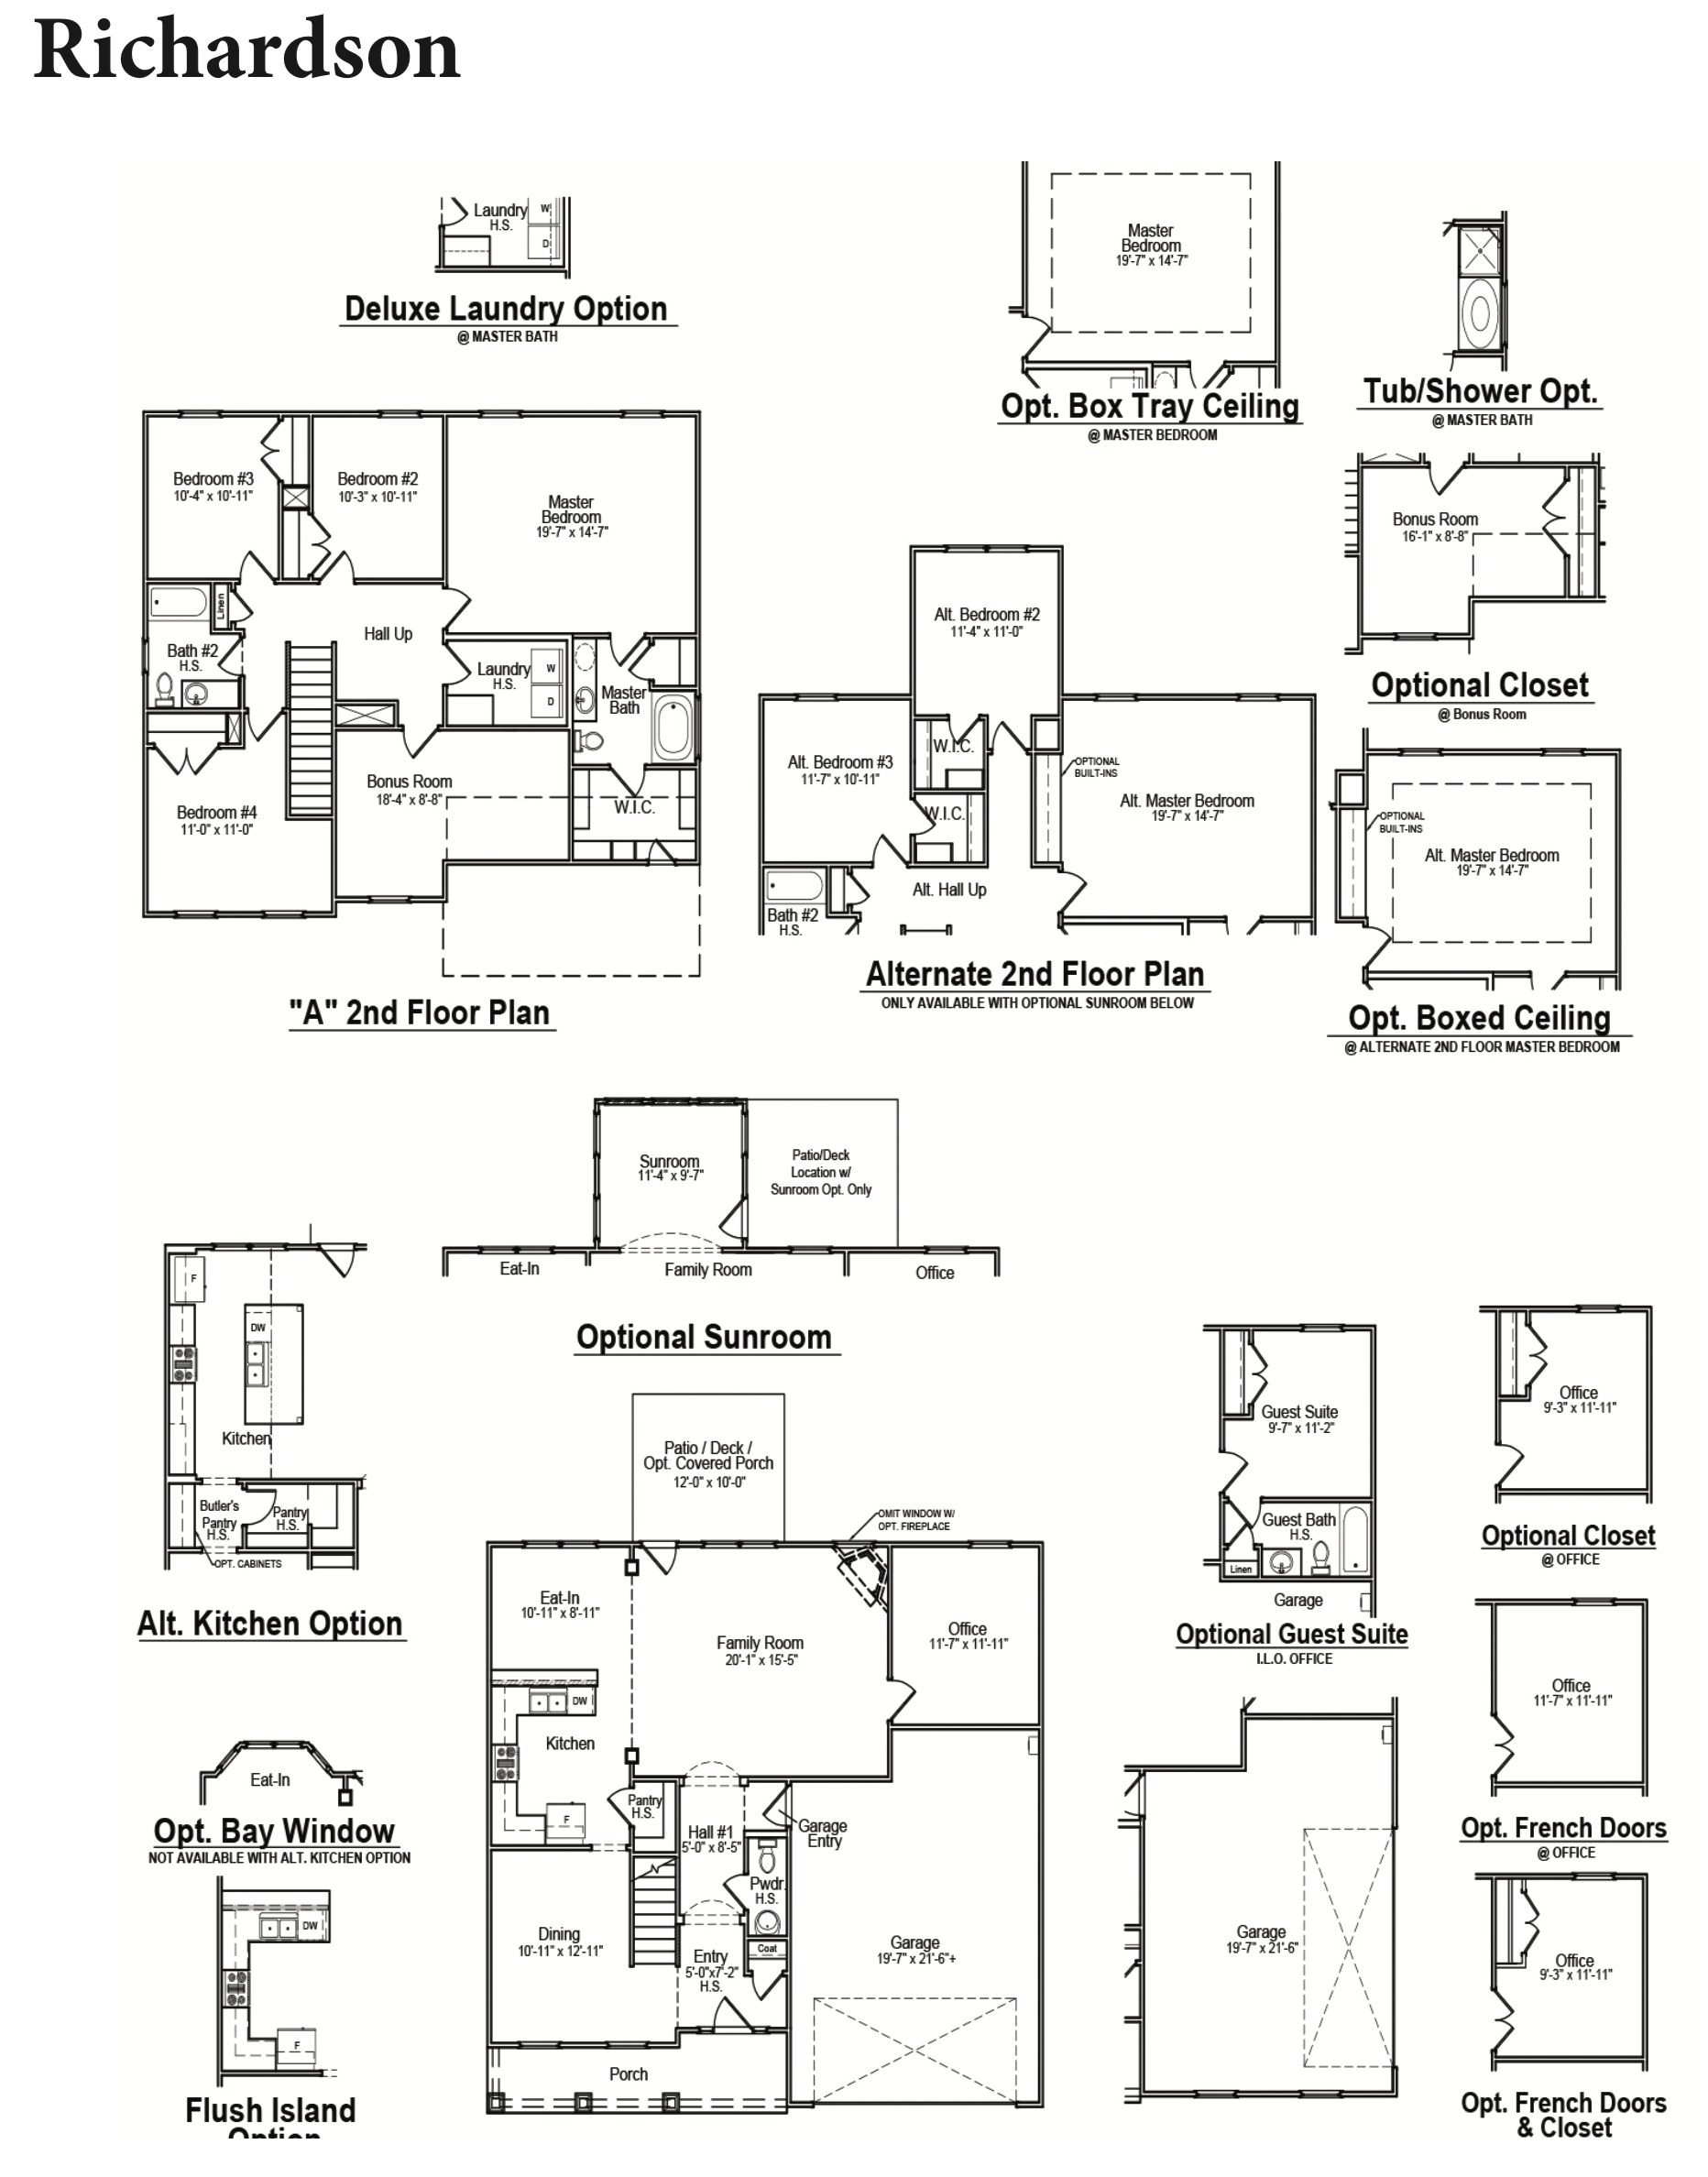 Richardson floor plan image